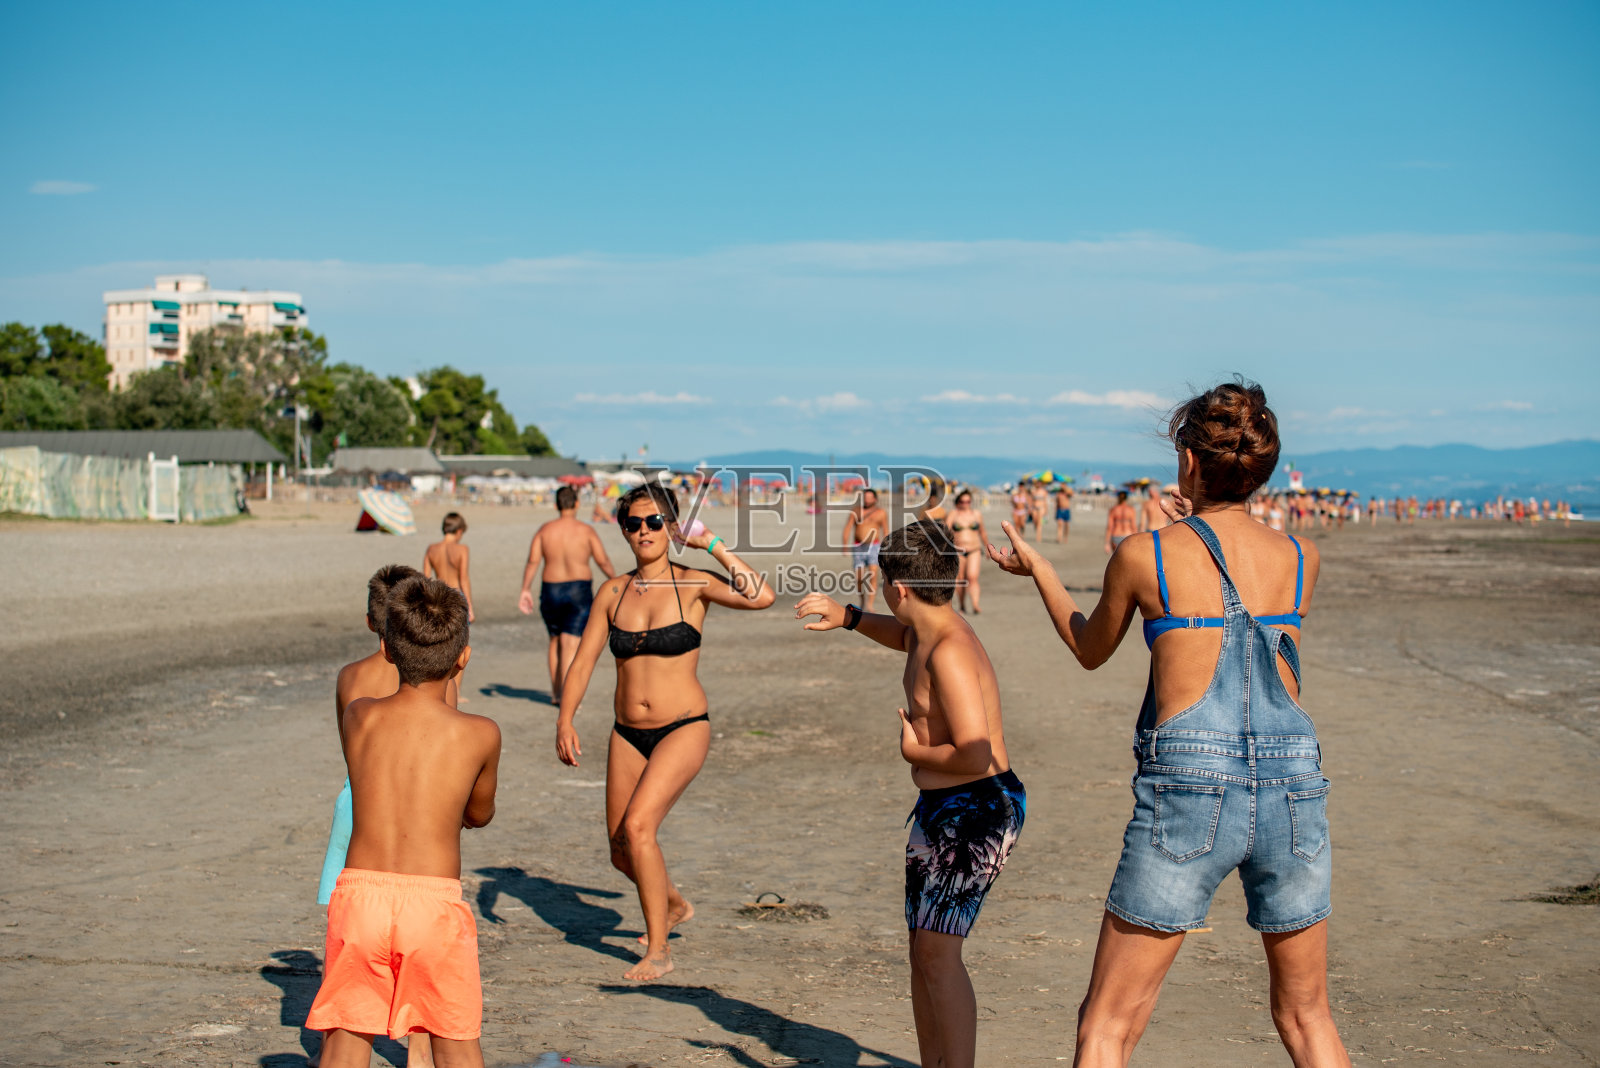 快乐的家庭扔水炸弹在夏天的沙滩上-库存照片照片摄影图片